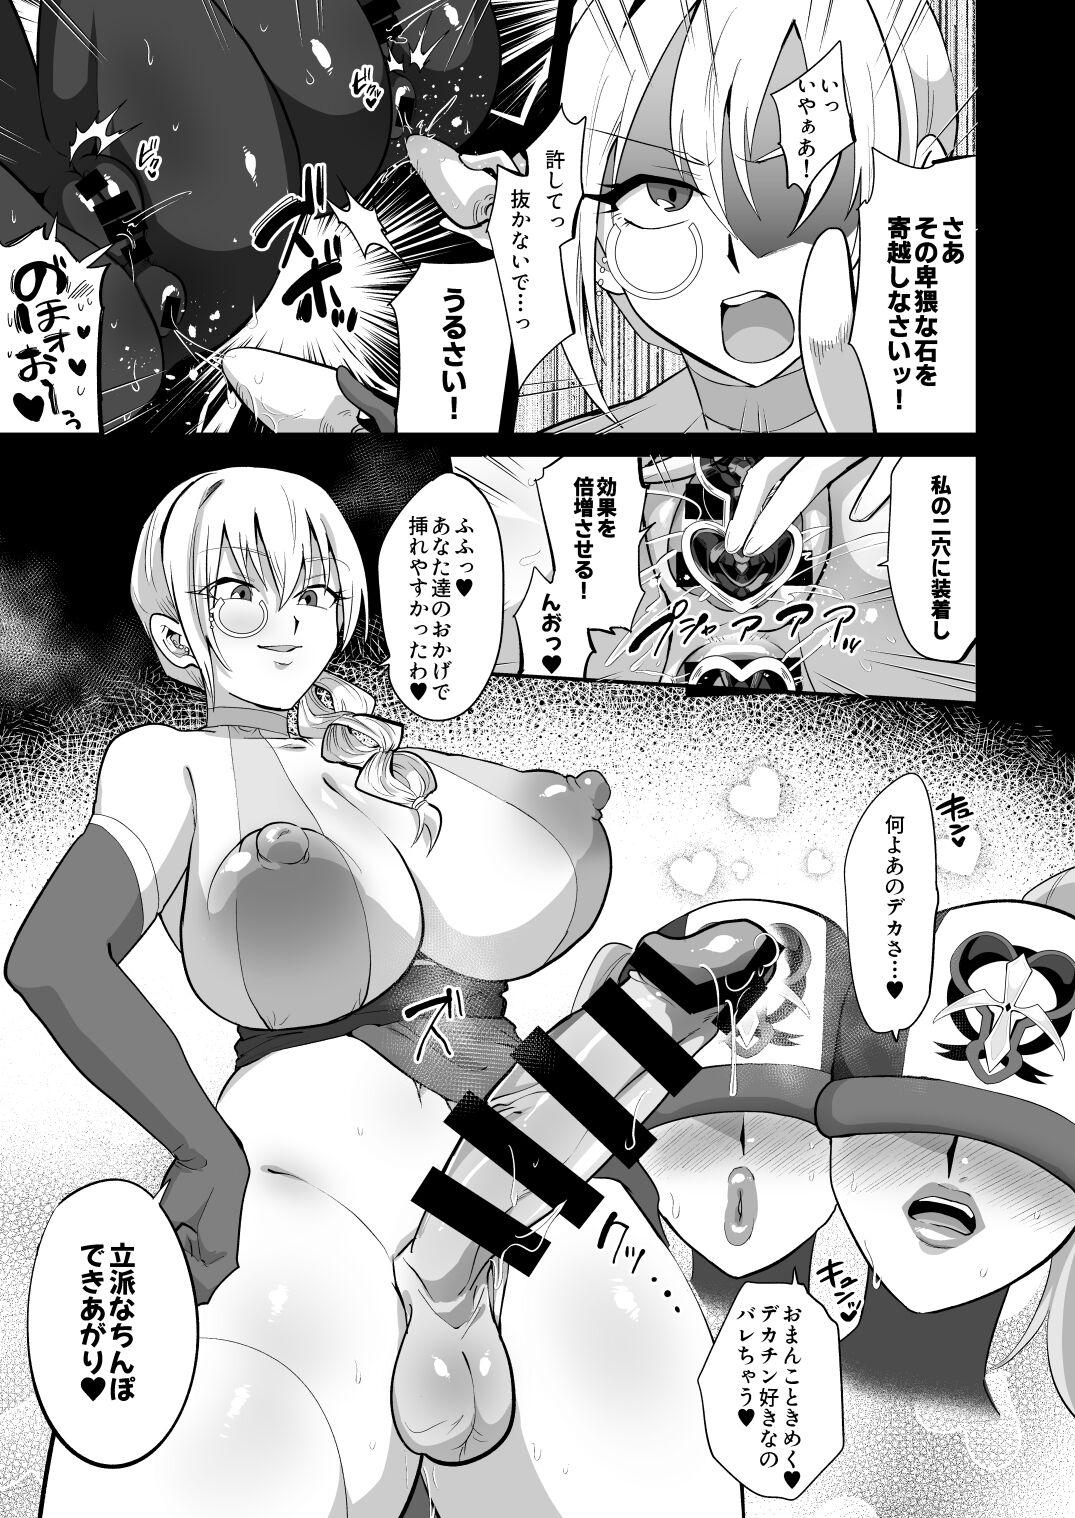 Magical Girl vs Futanari Combatant Sisters 16